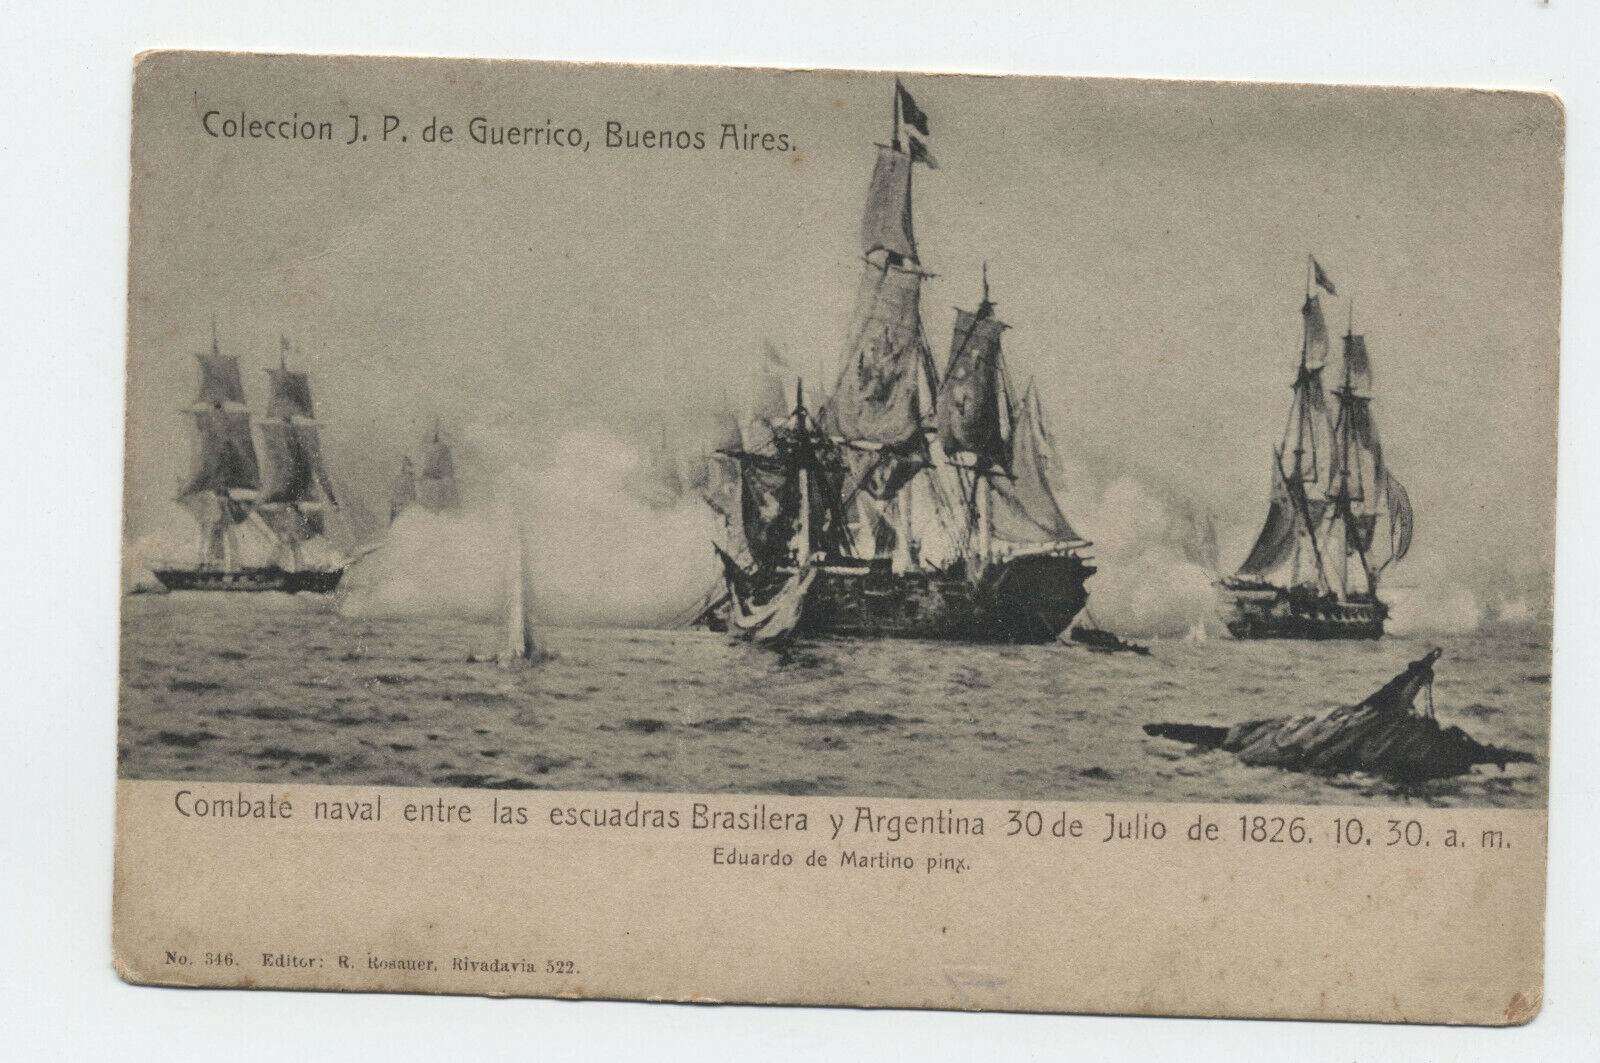 c1908 Buneos Aires postcard 1826 naval battle [S.673]